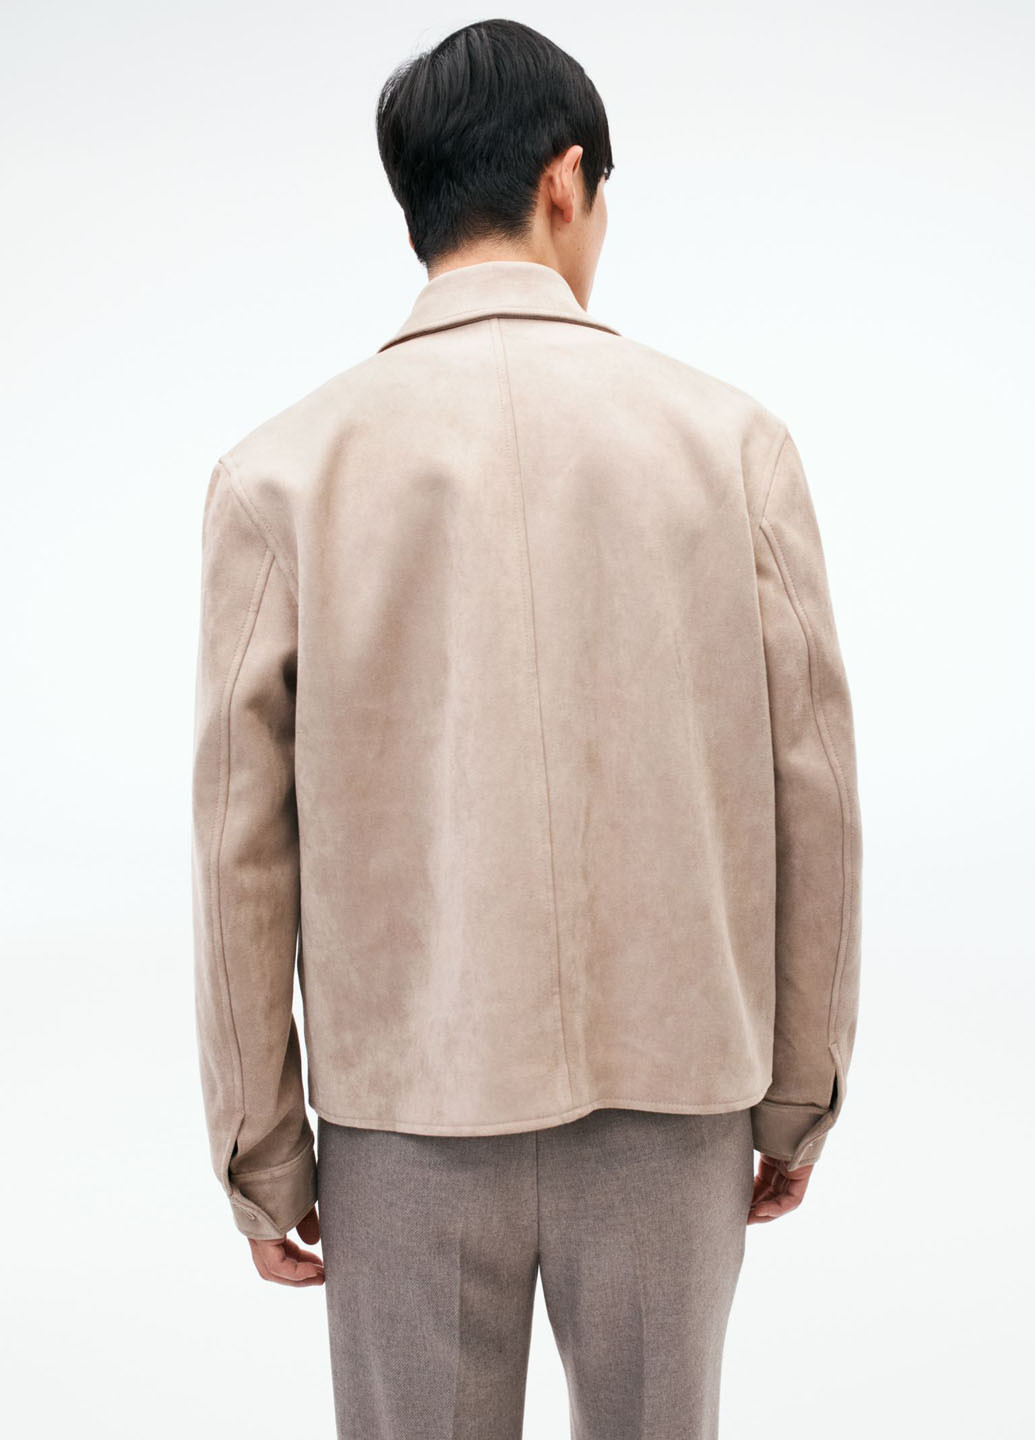 Темно-бежевая демисезонная куртка куртка-пиджак H&M